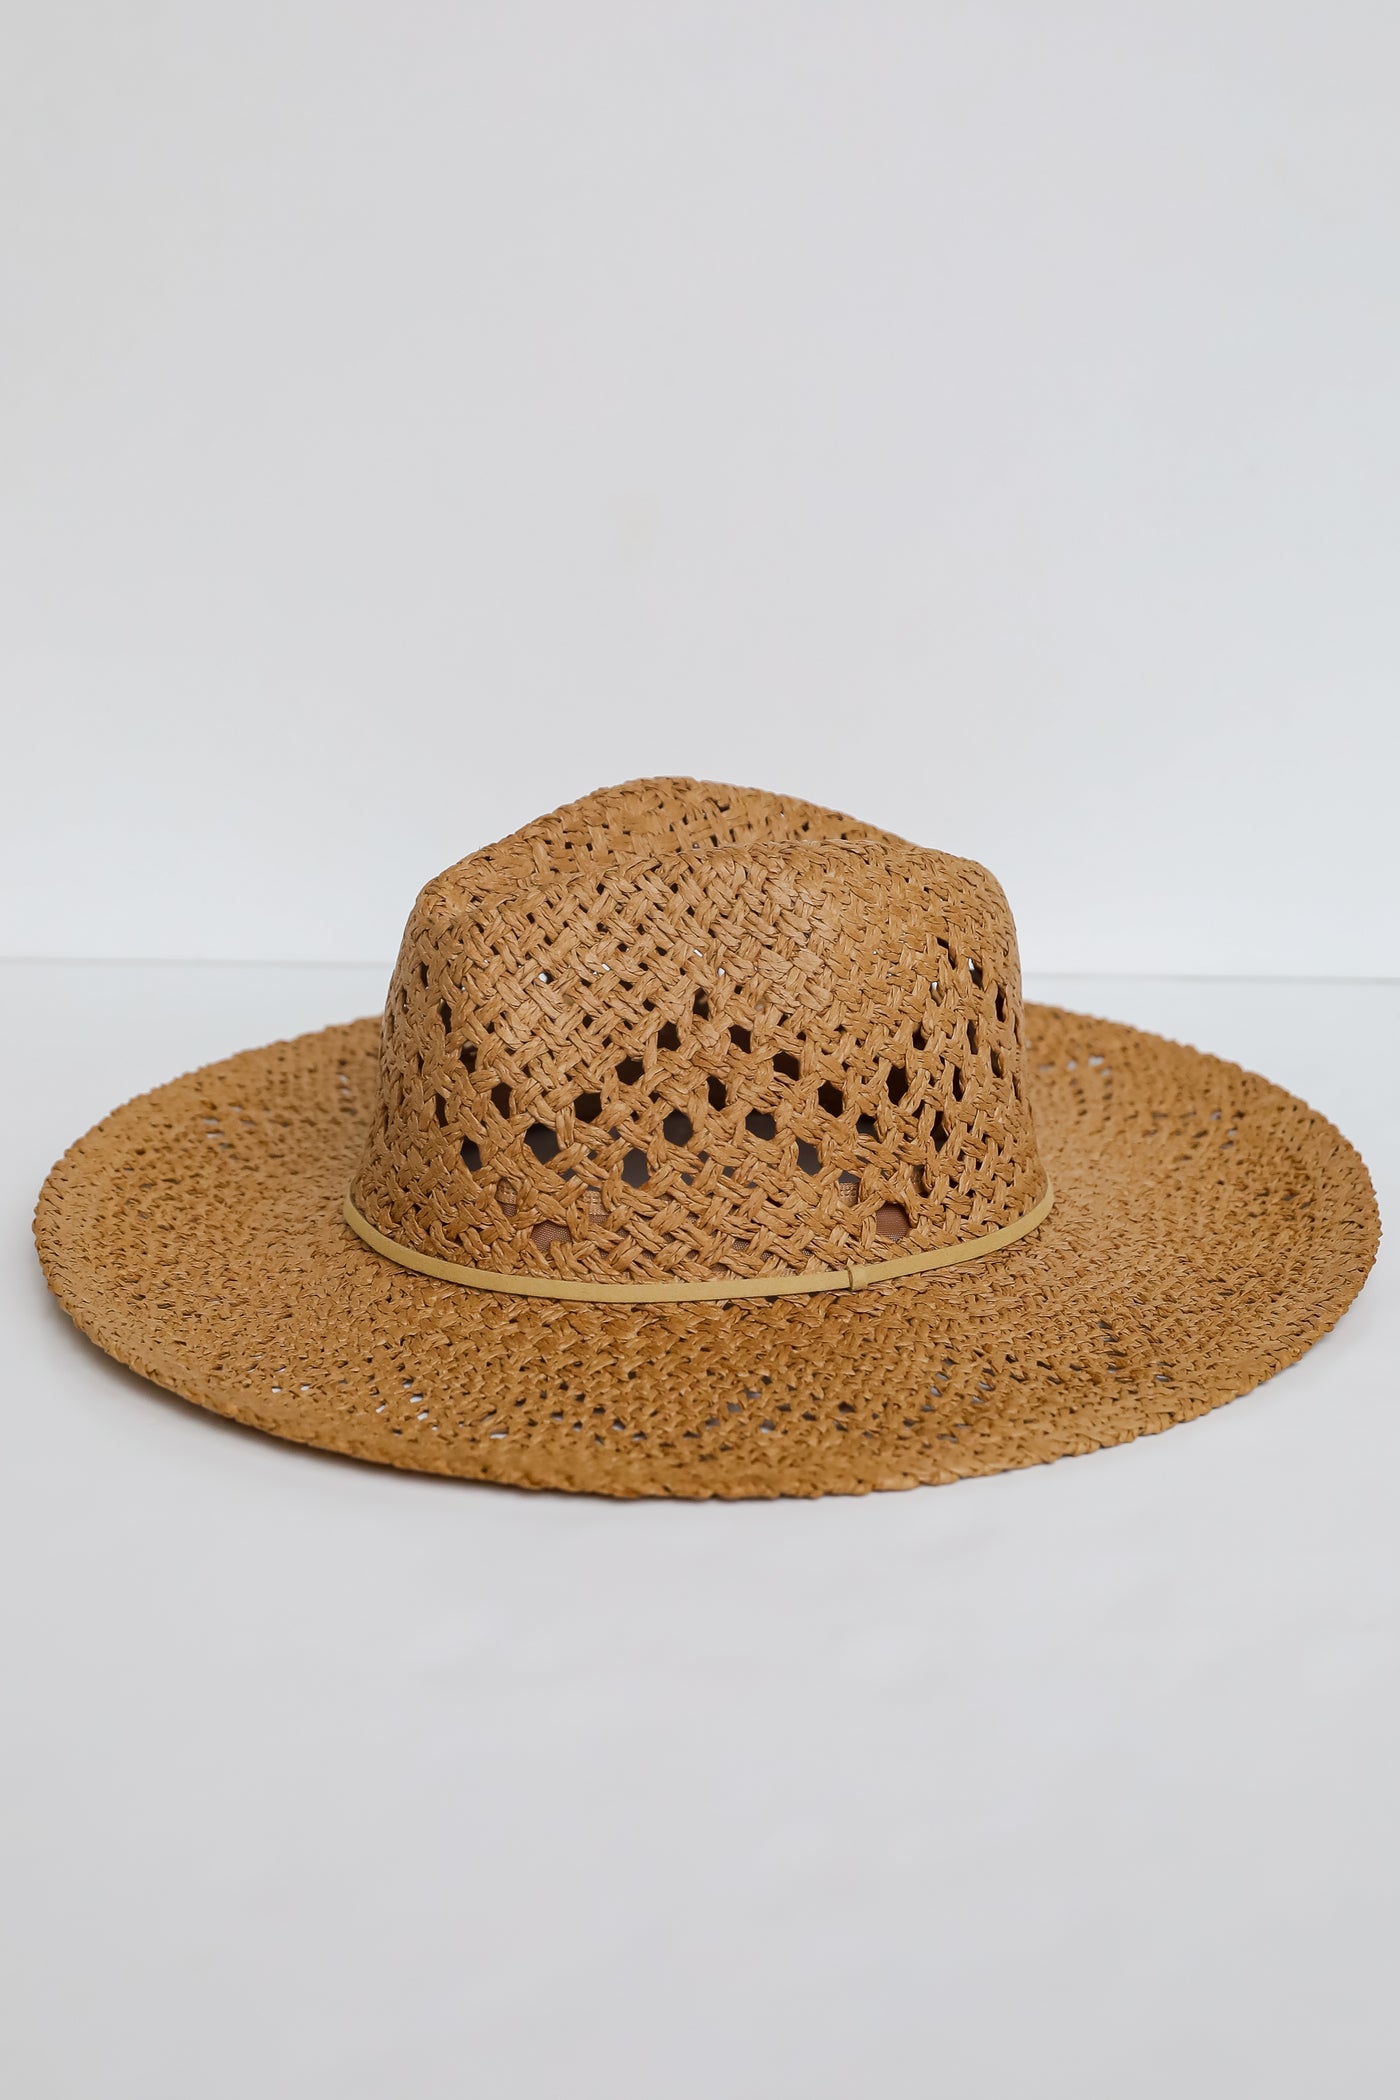 cute straw beach hats